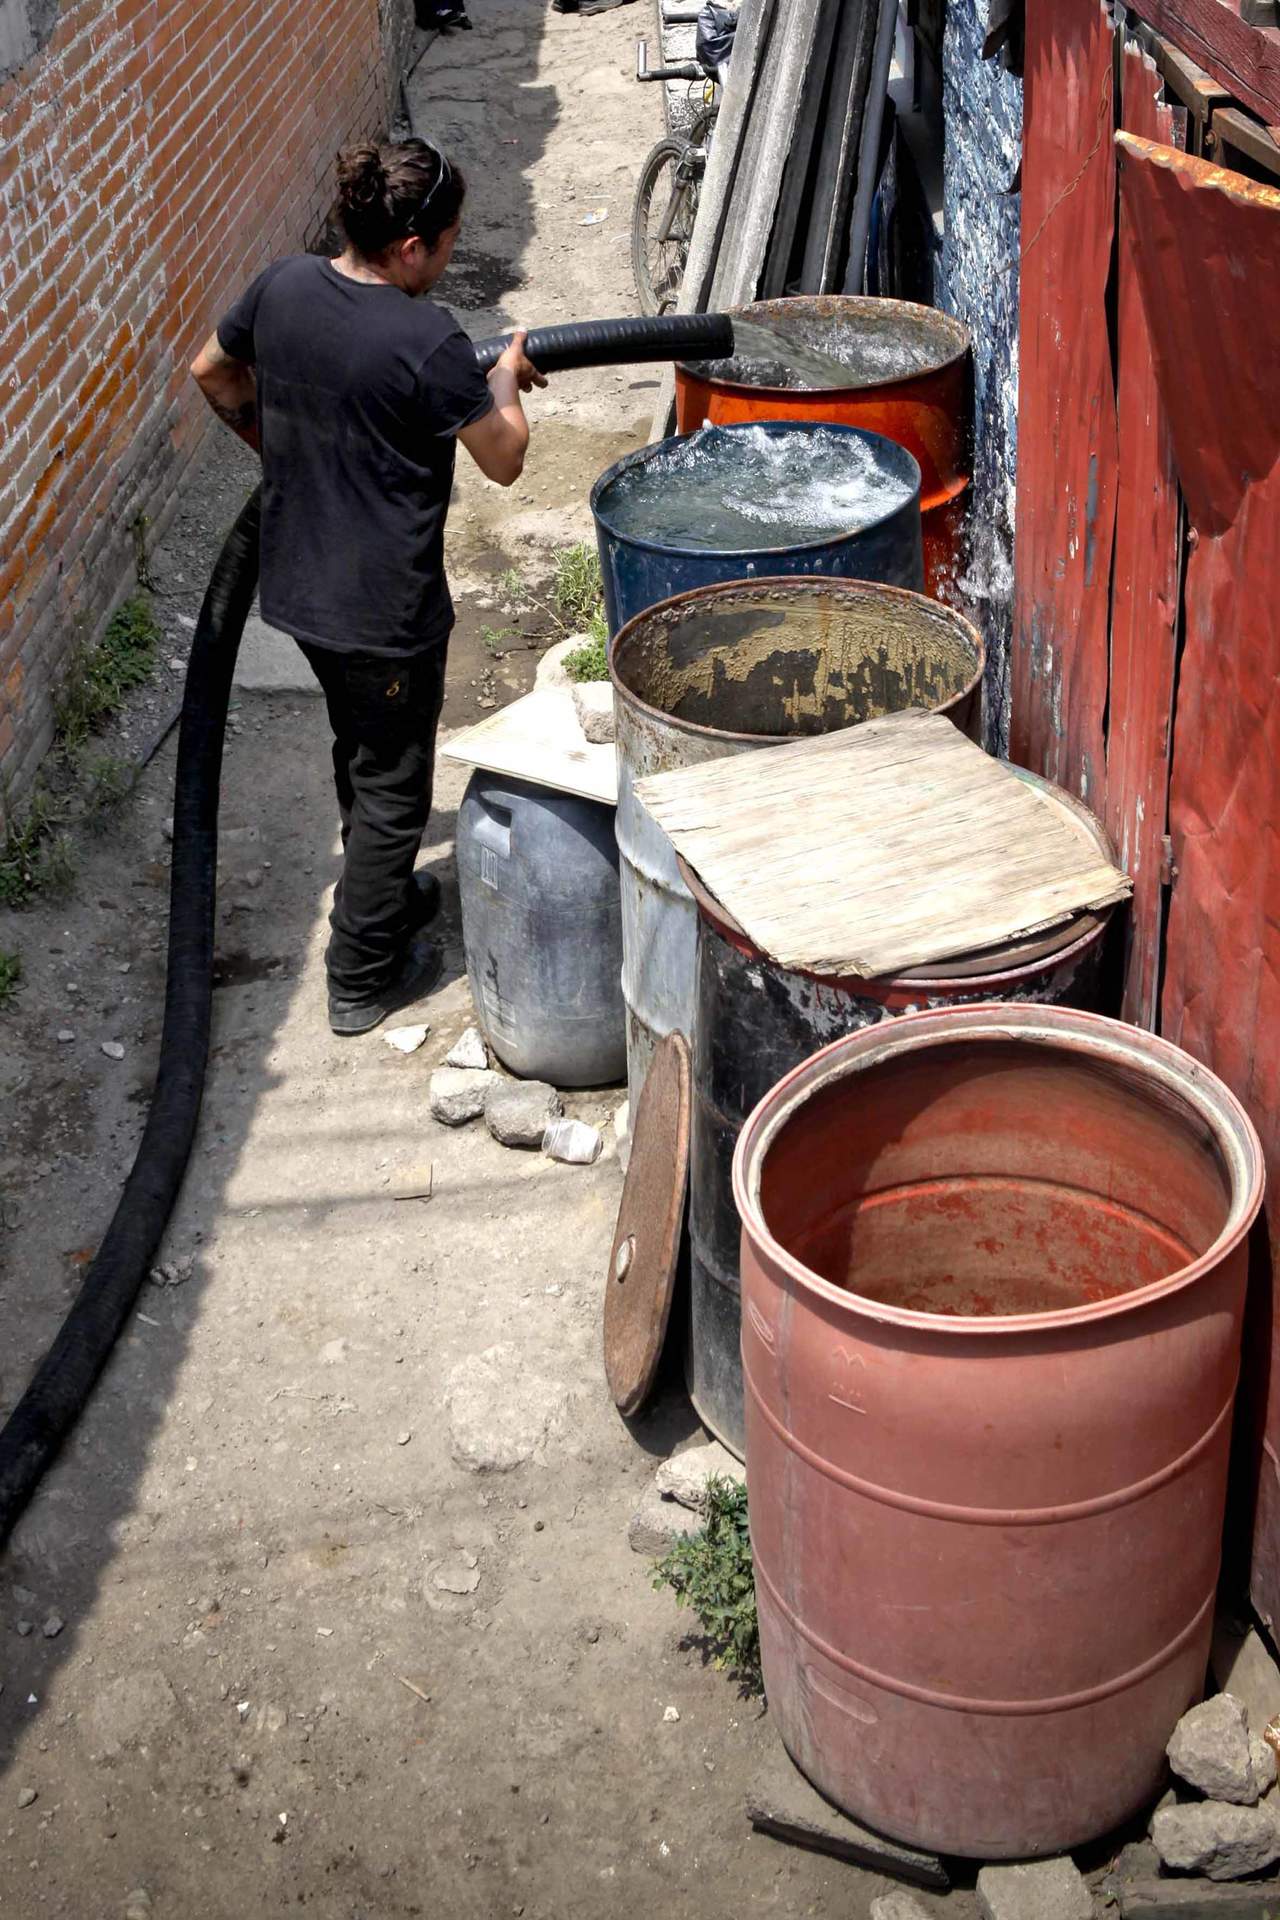 El director del Sistema de Aguas de la Ciudad de México, Ramón Aguirre, anunció que este jueves comenzará a normalizarse el servicio de agua, aunque será hasta el sábado cuando se restablezca en su totalidad en las 13 demarcaciones afectadas. (EL UNIVERSAL)